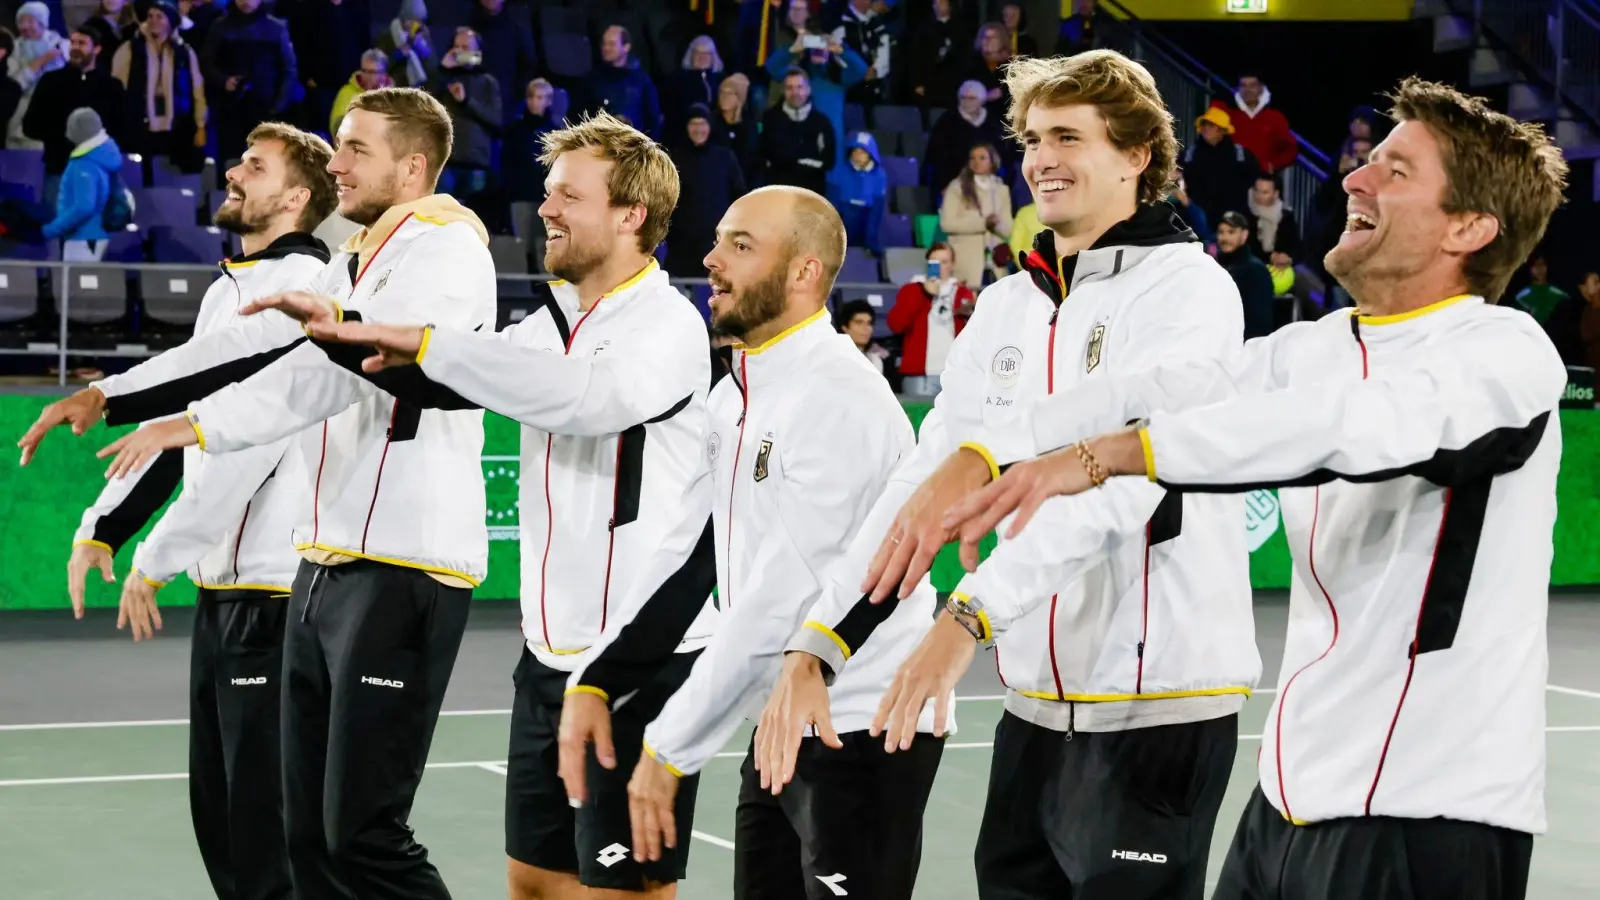 Das deutsche Davis-Cup-Team zieht als Gruppensieger ins Finalturnier ein. (Foto: Frank Molter/dpa)